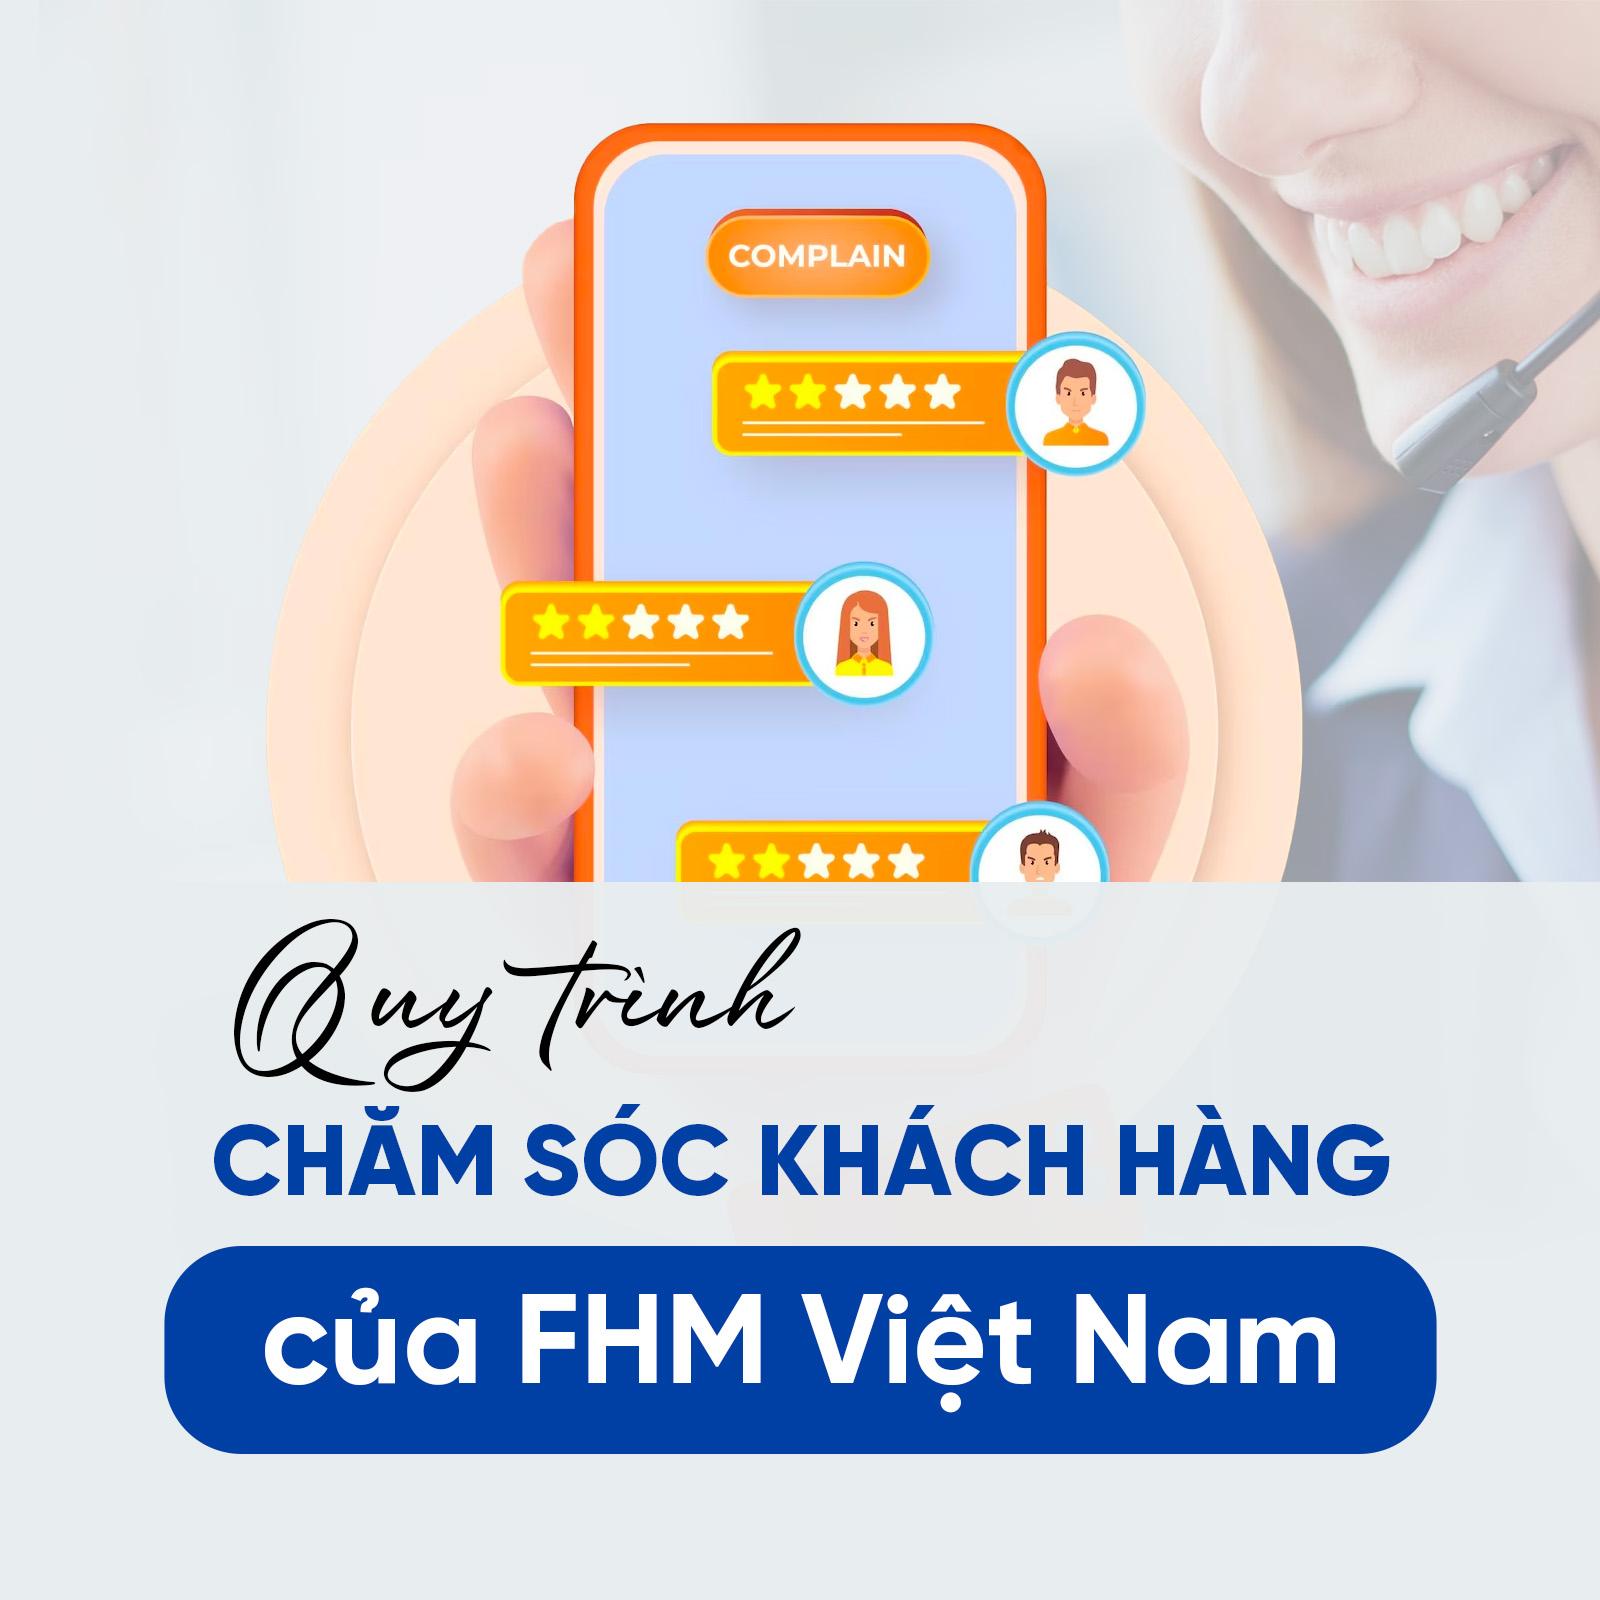 Quy trình chăm sóc khách hàng của FHM Việt Nam